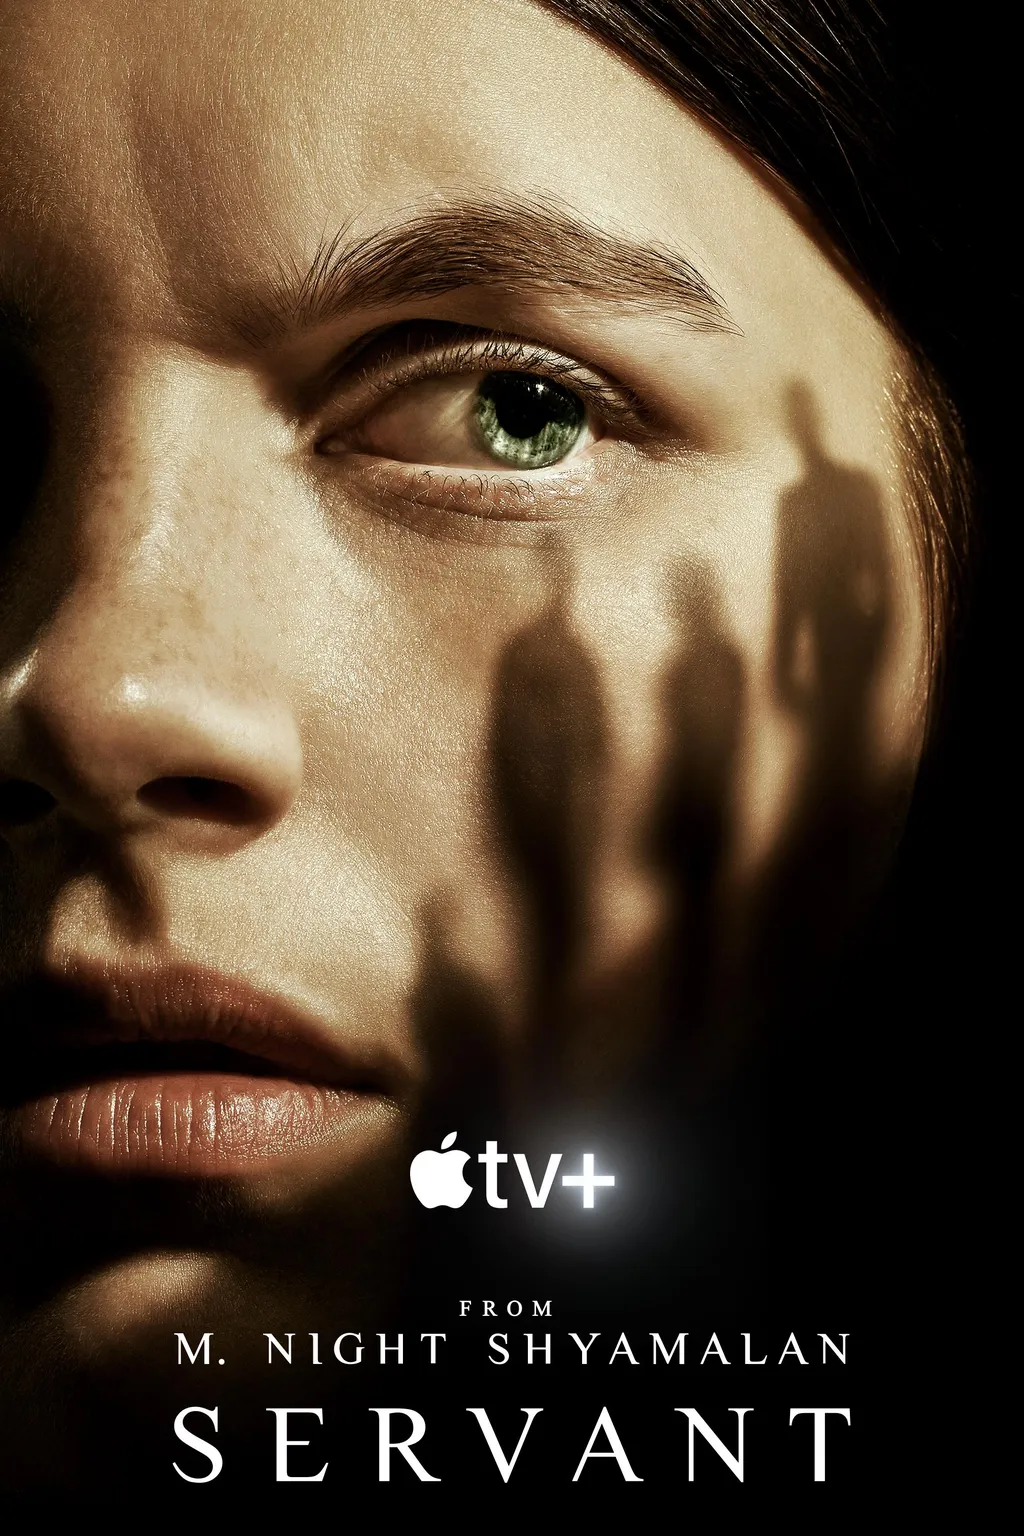 Servant | Série de terror da Apple ganha teaser da 4ª e última temporada